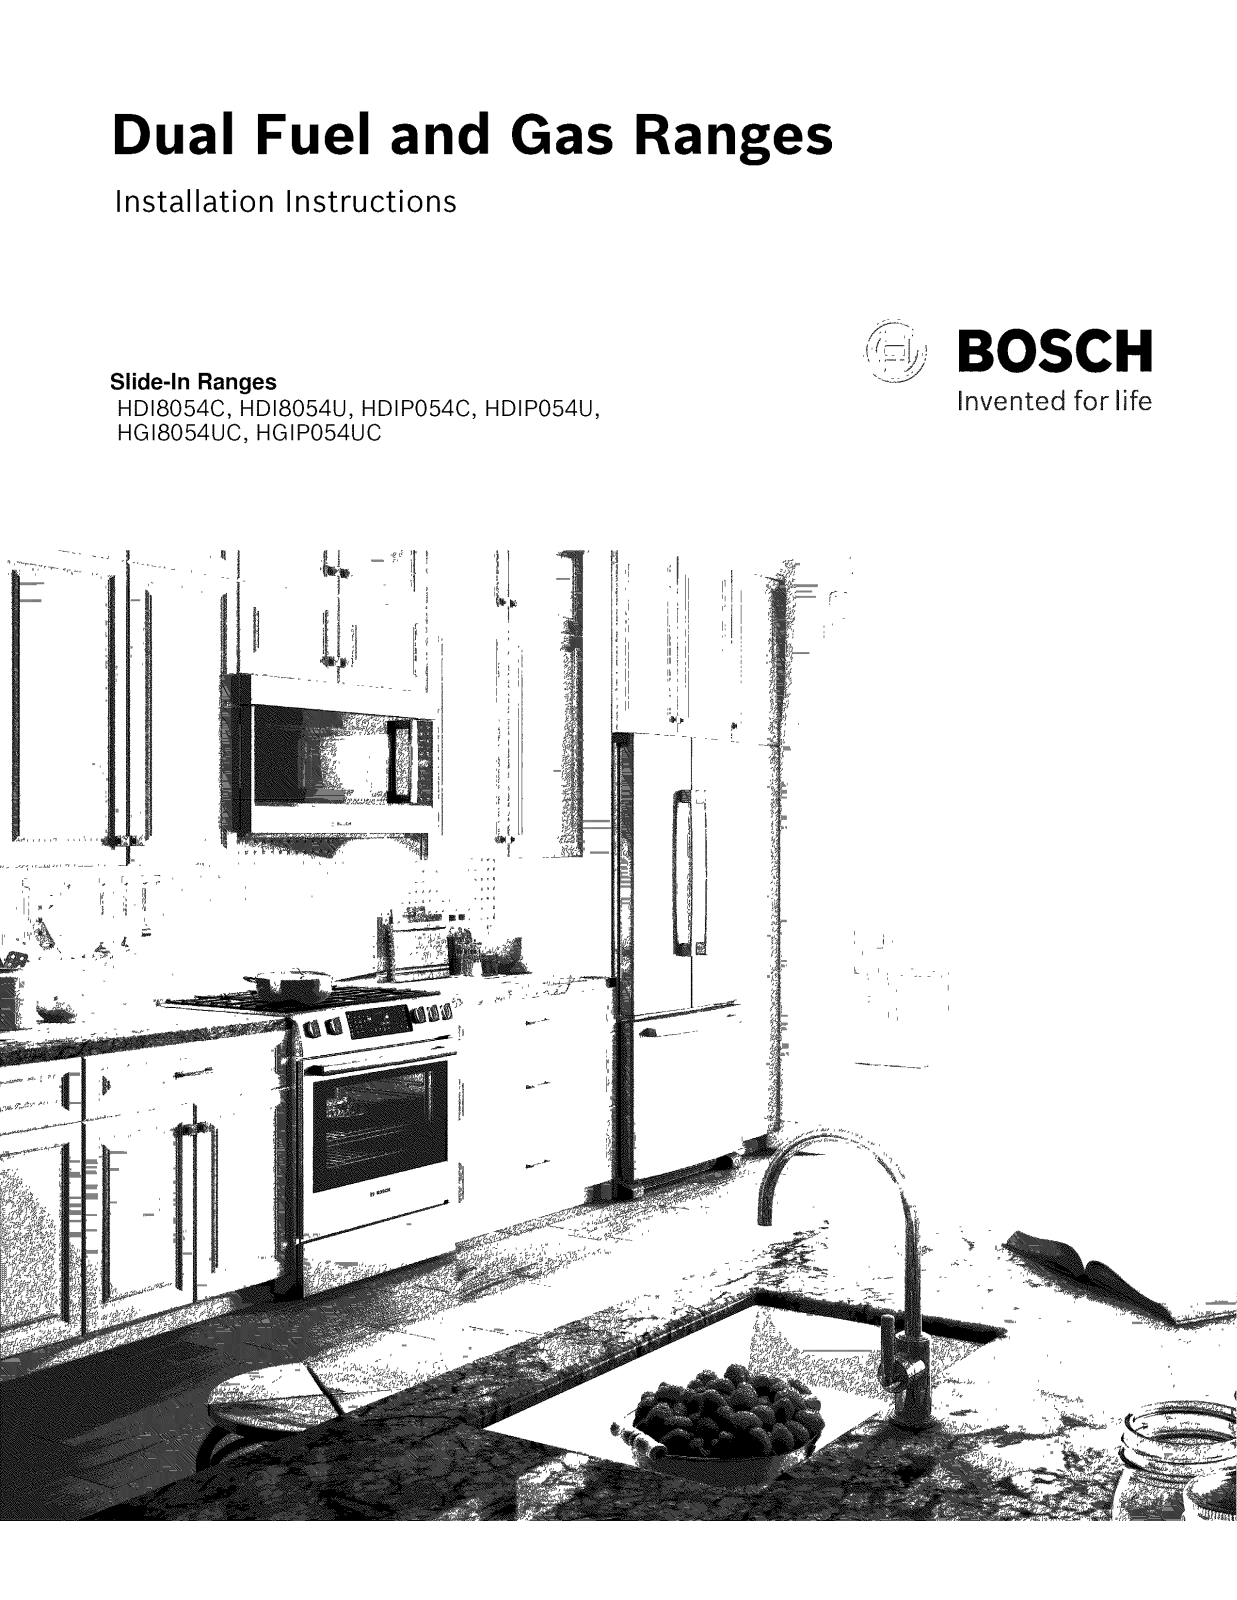 Bosch HGIP054UC/07, HGIP054UC/06, HGIP054UC/05, HGIP054UC/04, HGIP054UC/03 Installation Guide